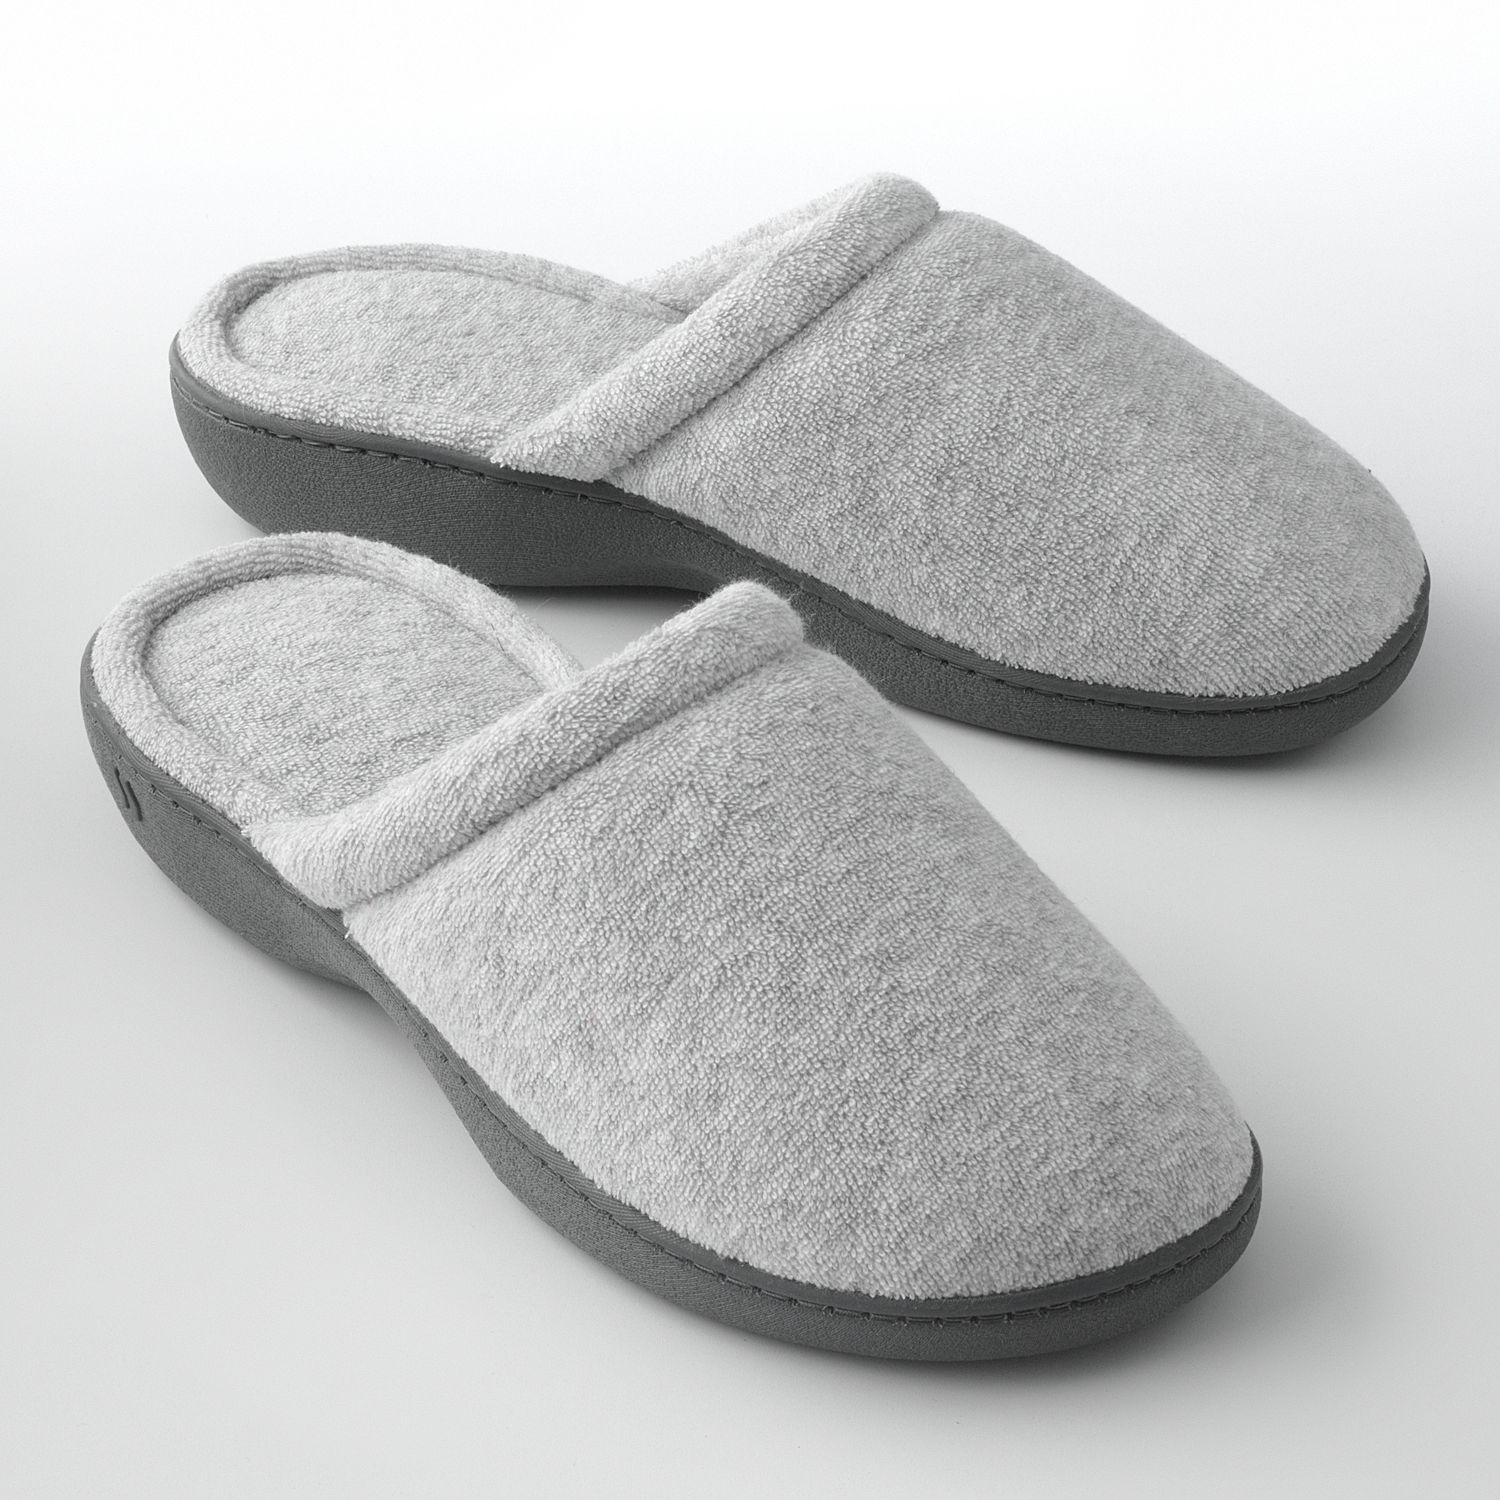 inblu slippers amazon